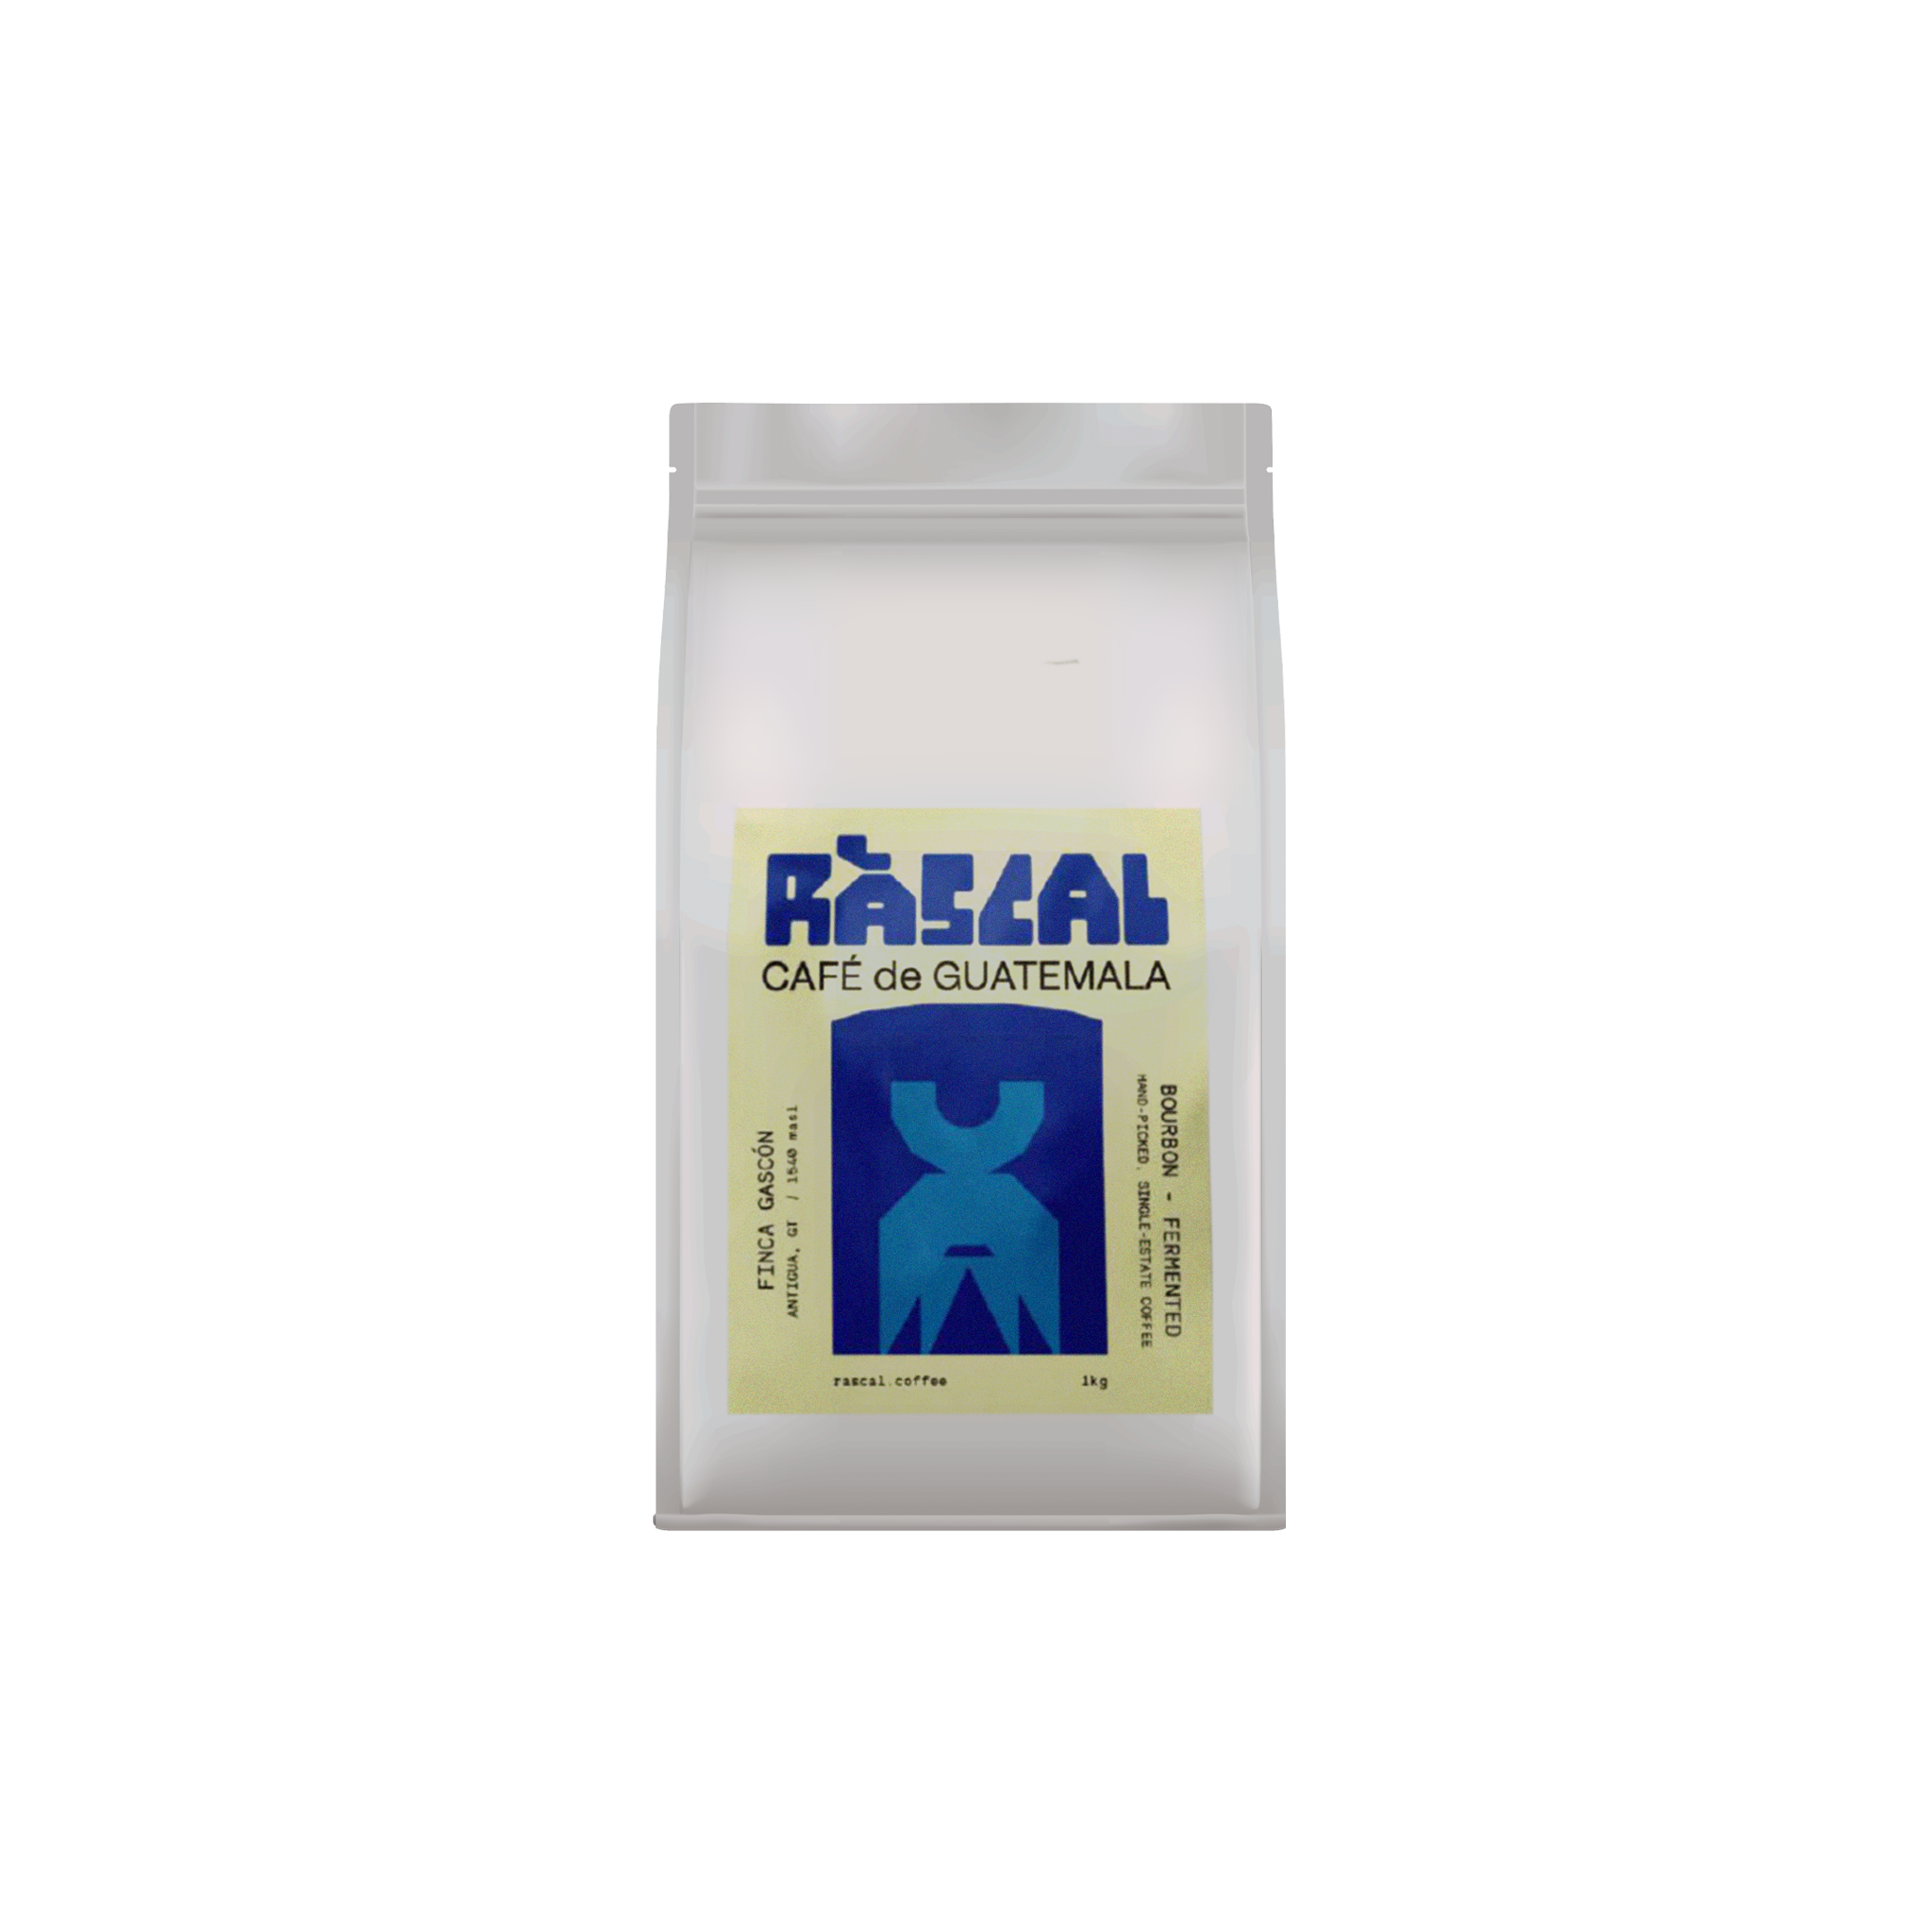 Finca Gascón - Rascal Coffee - Guatemala